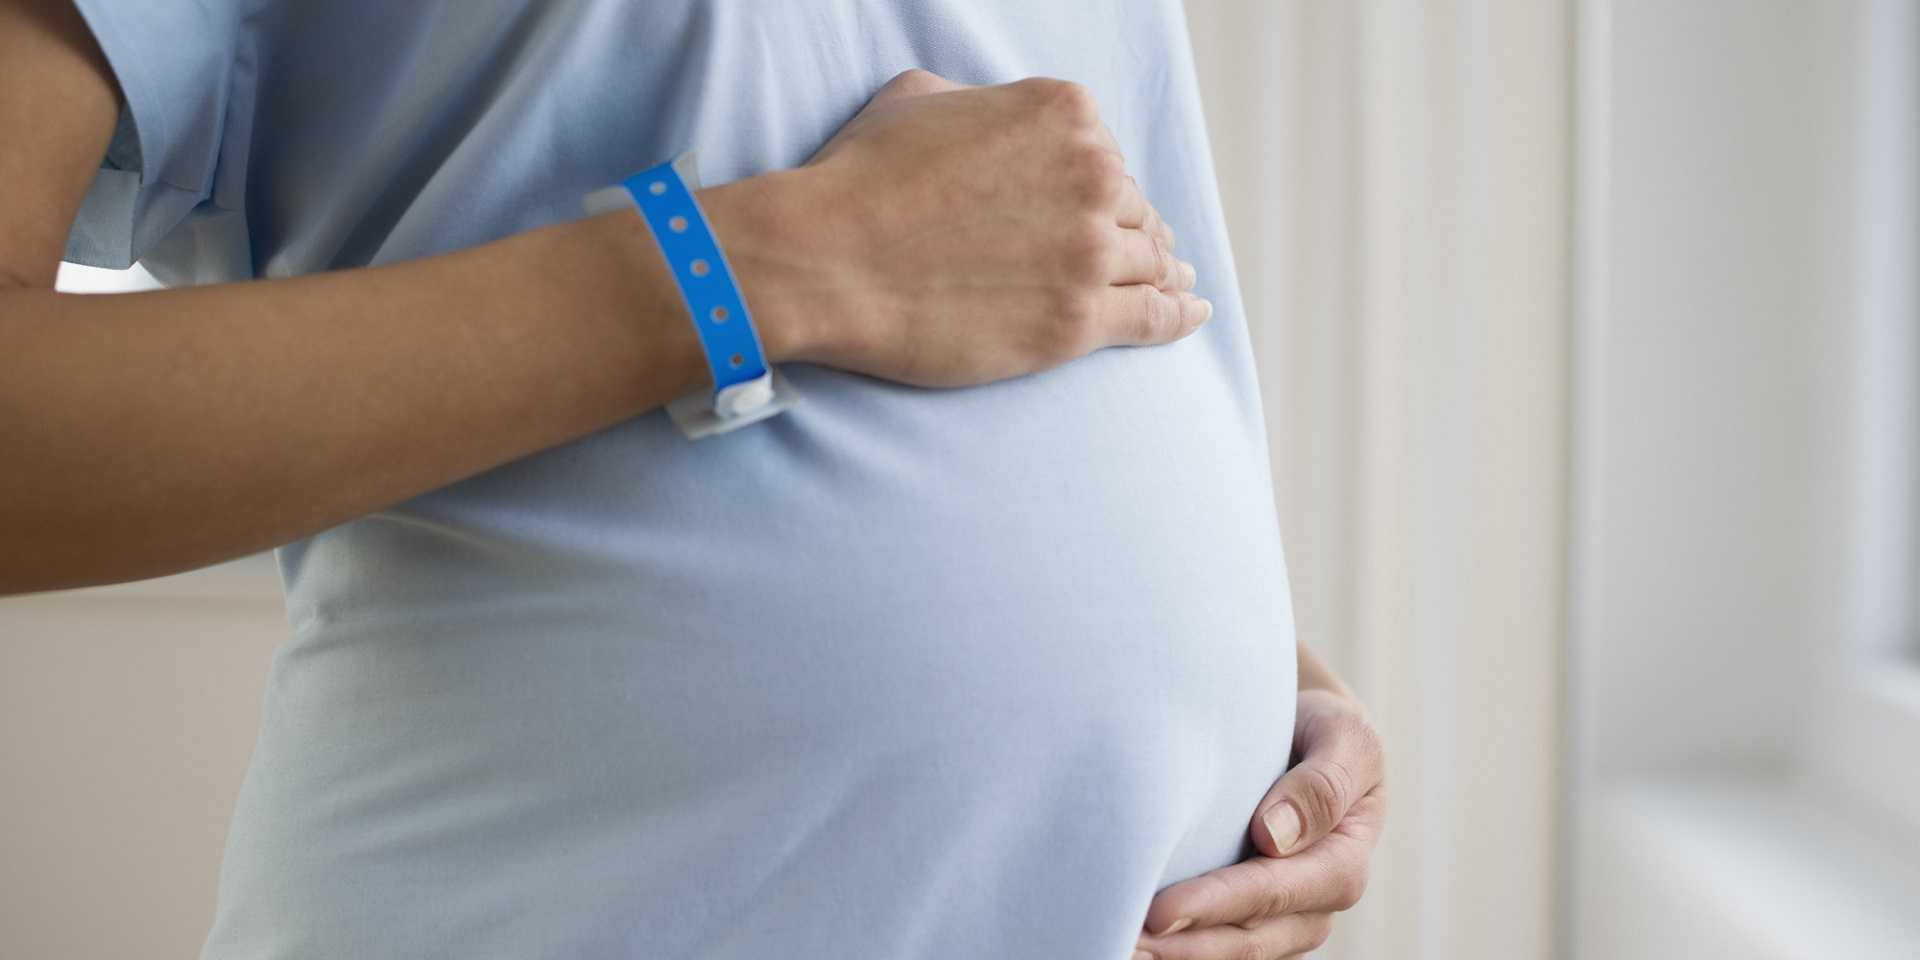 Причины, лечение и последствия маловодия при беременности